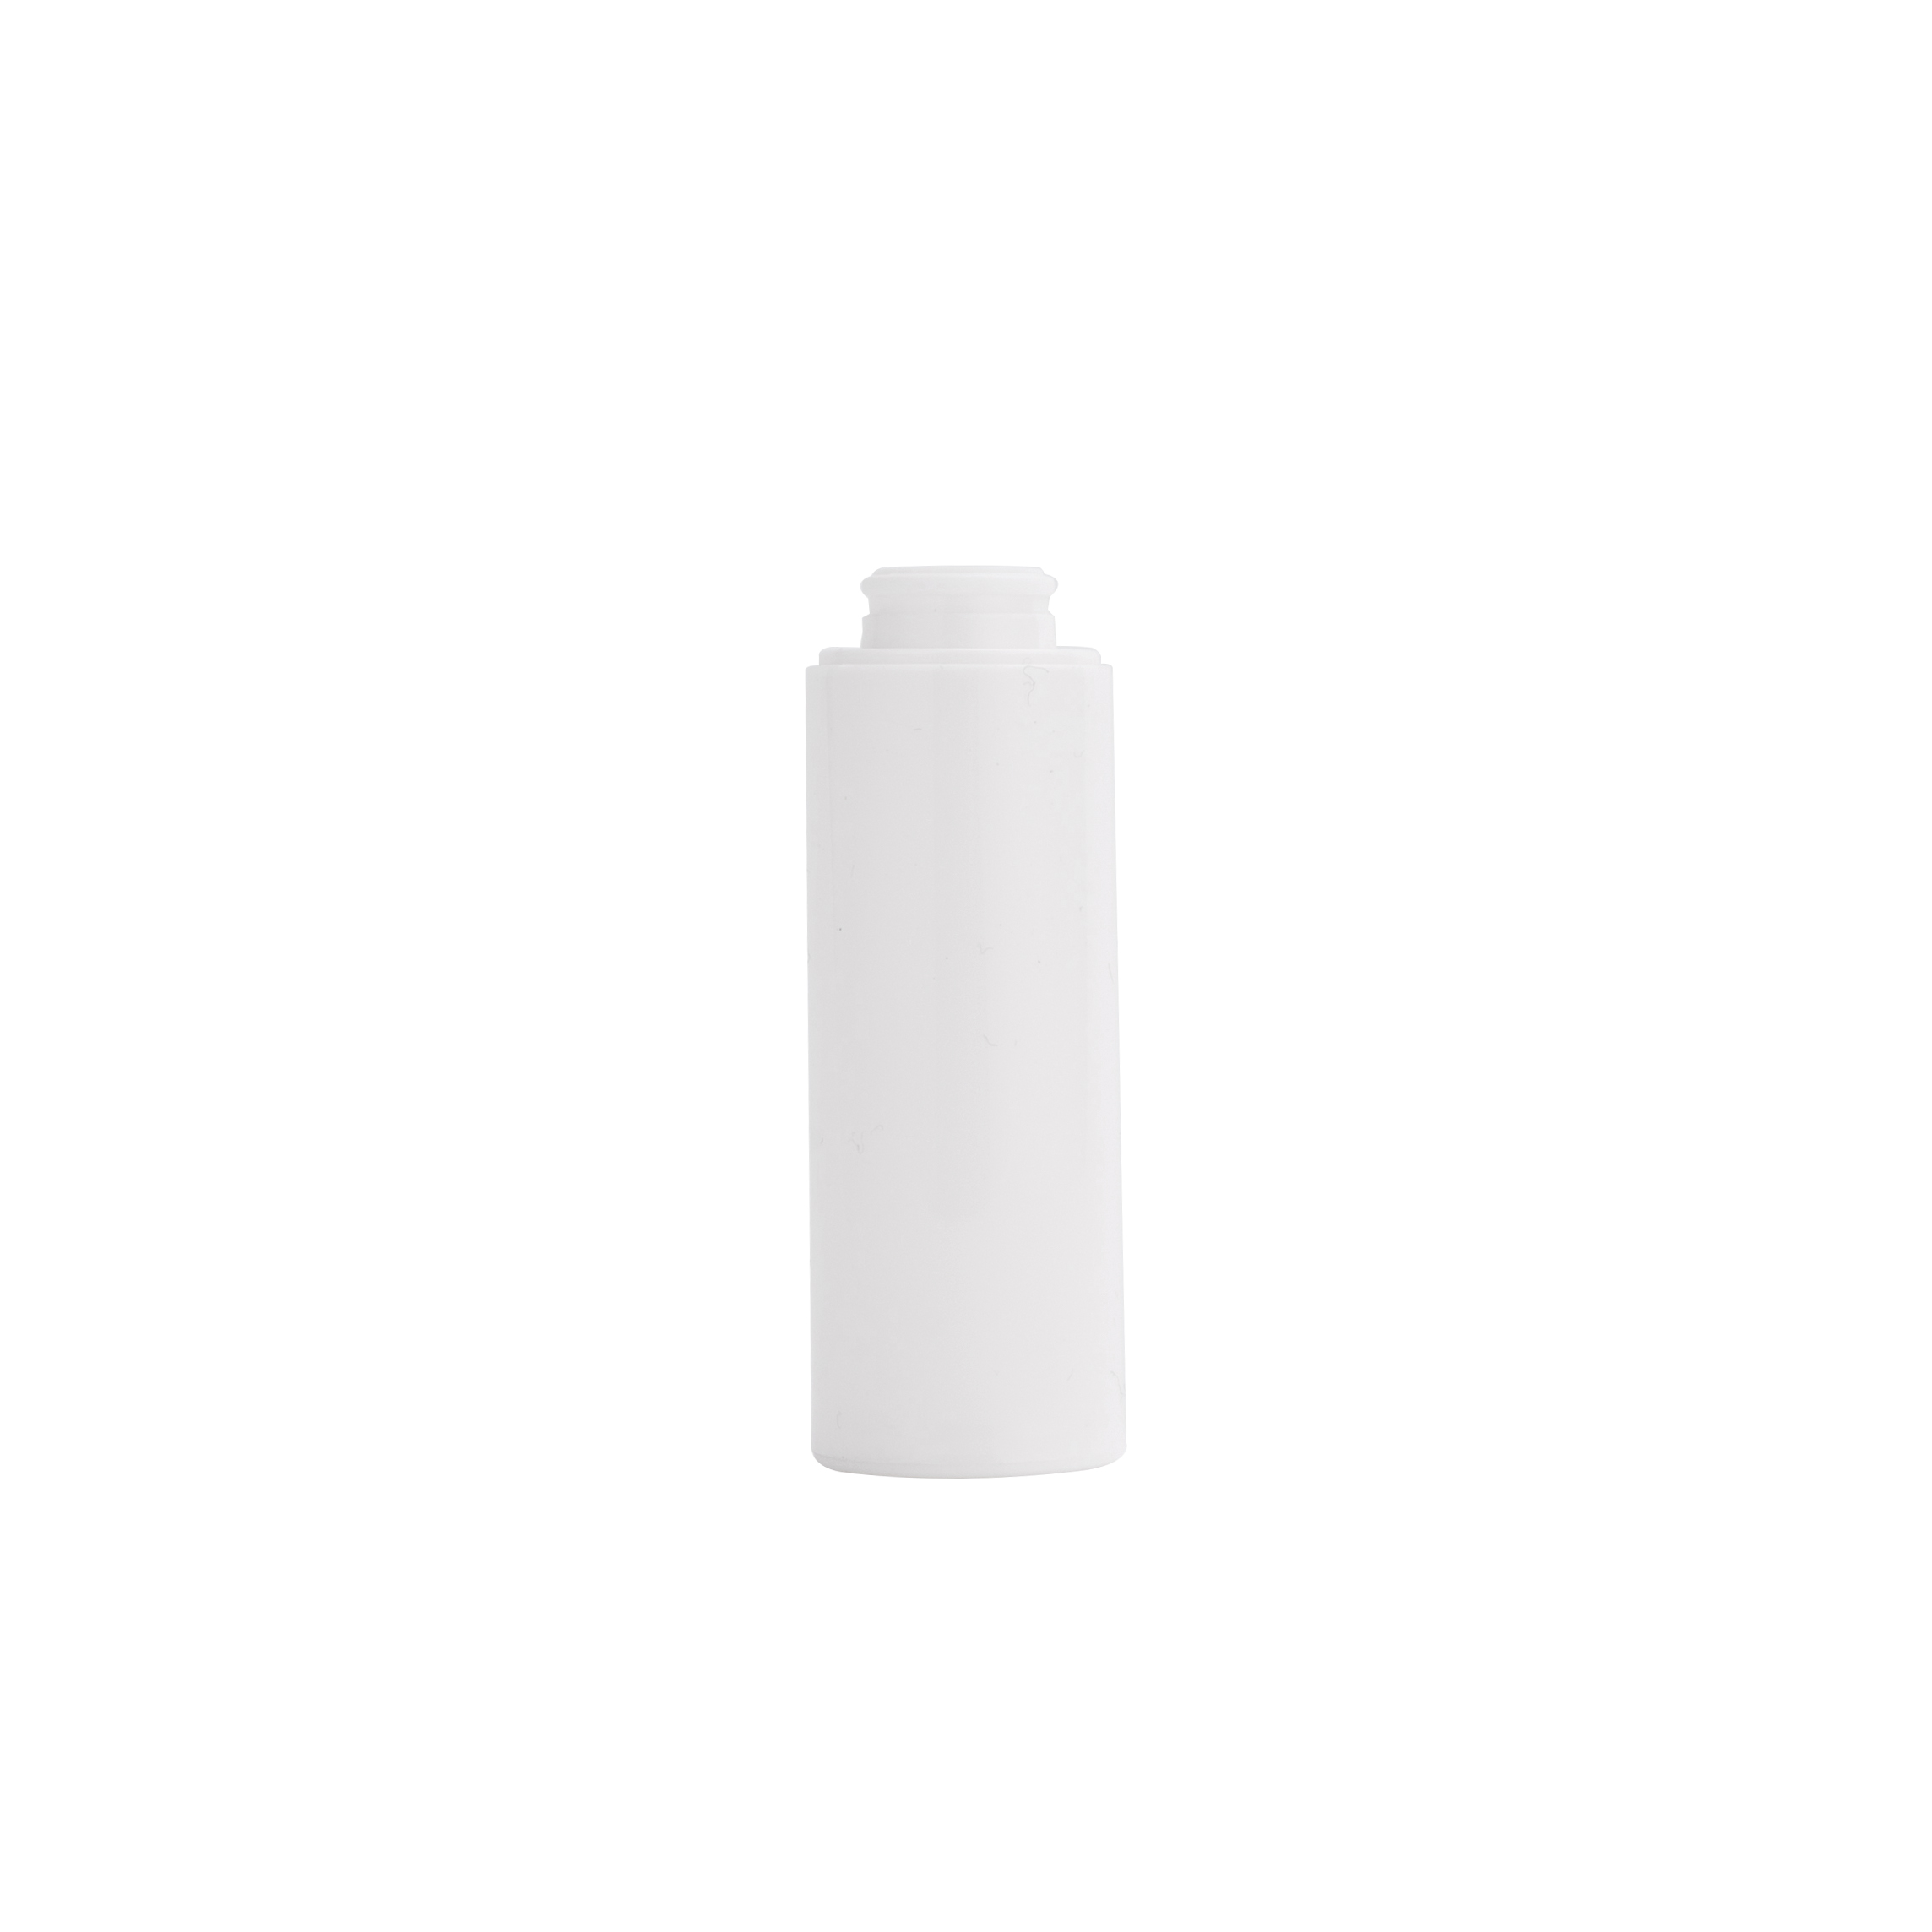 White Vacumm Airless Bottle for Skin Care Cream